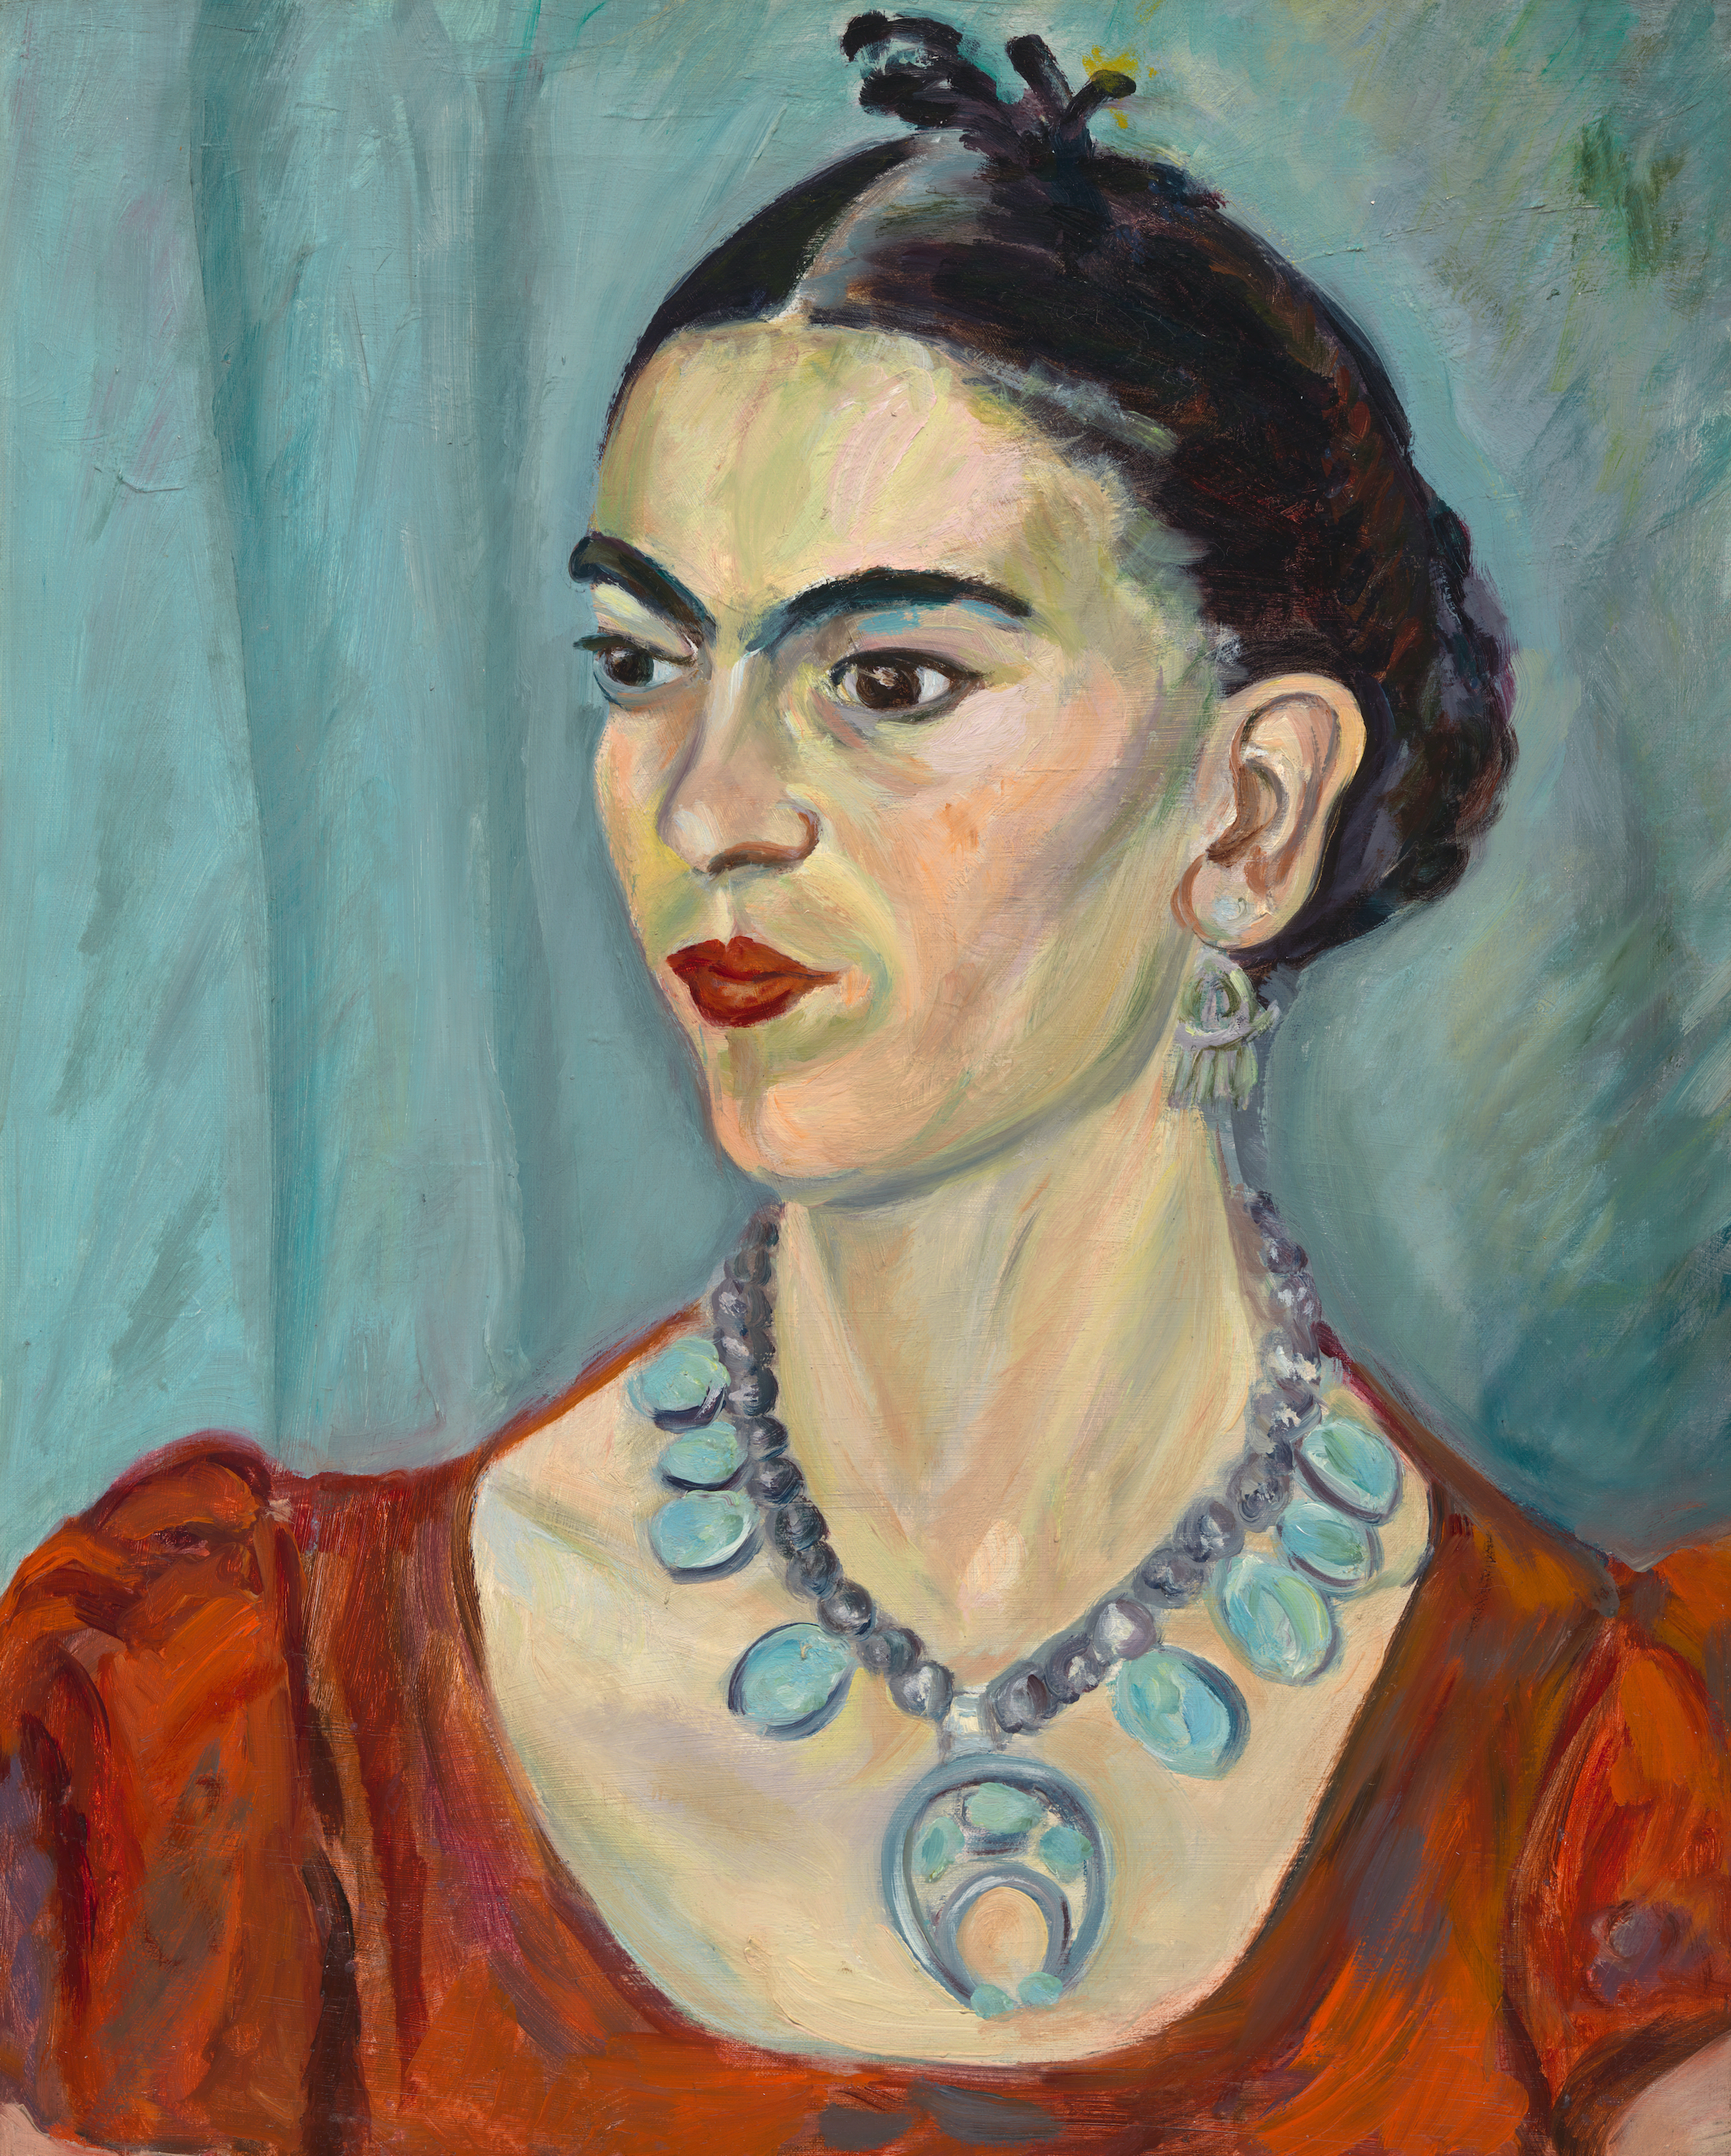 فريدا كالو by Magda Pach - 1933 م - 51.1 × 41 سم 